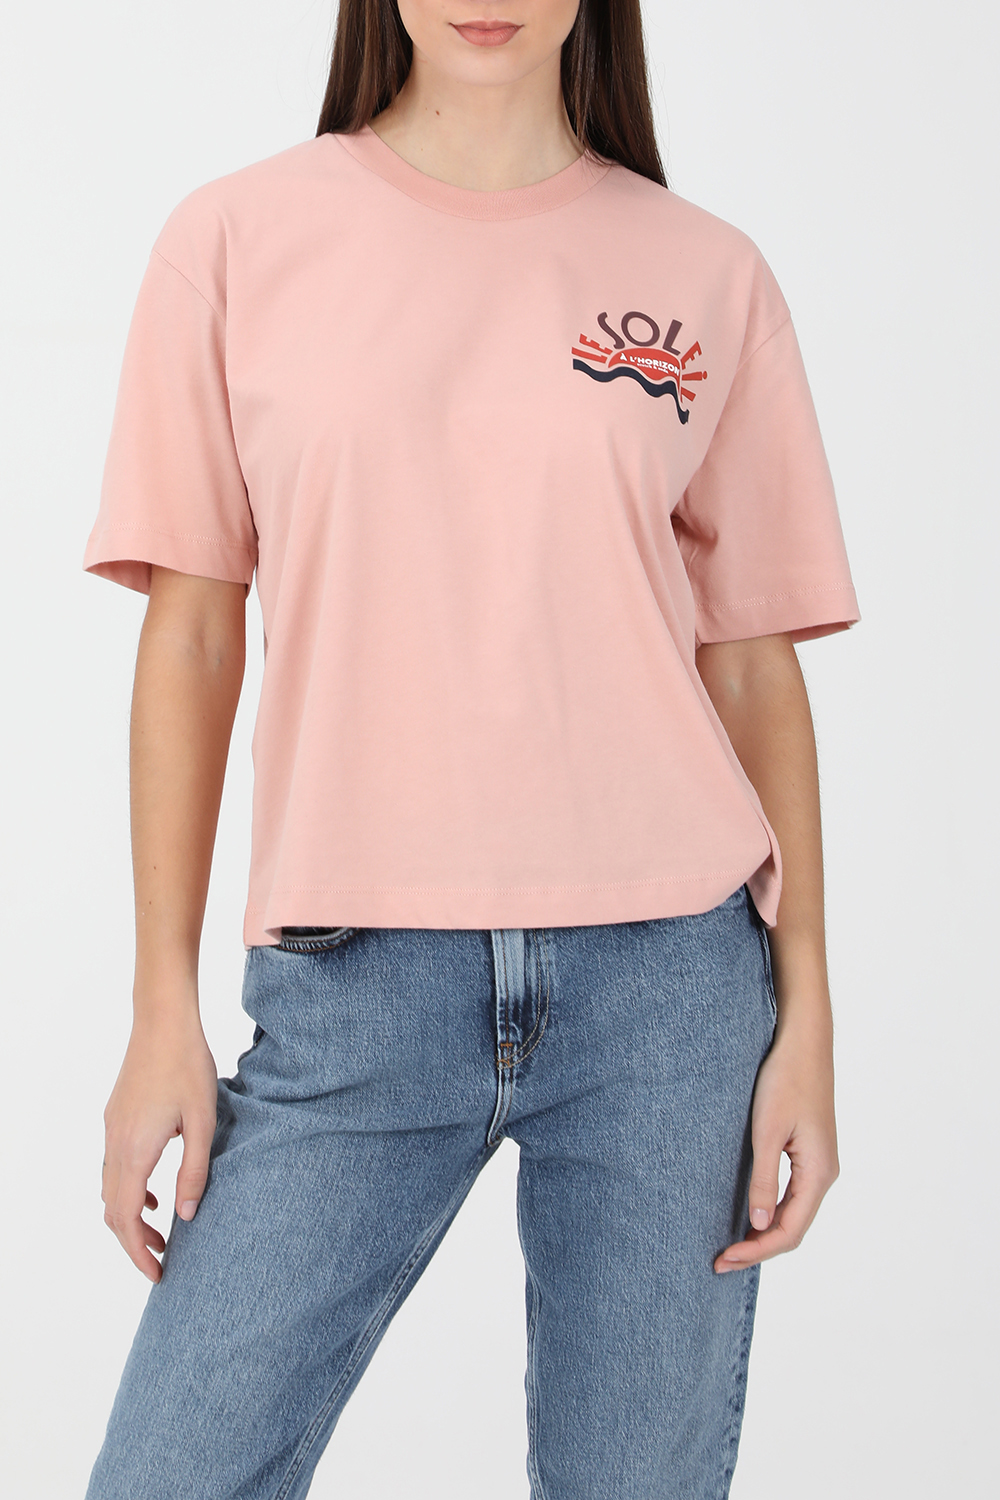 Γυναικεία/Ρούχα/Μπλούζες/Κοντομάνικες SCOTCH & SODA - Γυναικεία κοντομάνικη μπλούζα SCOTCH & SODA ροζ